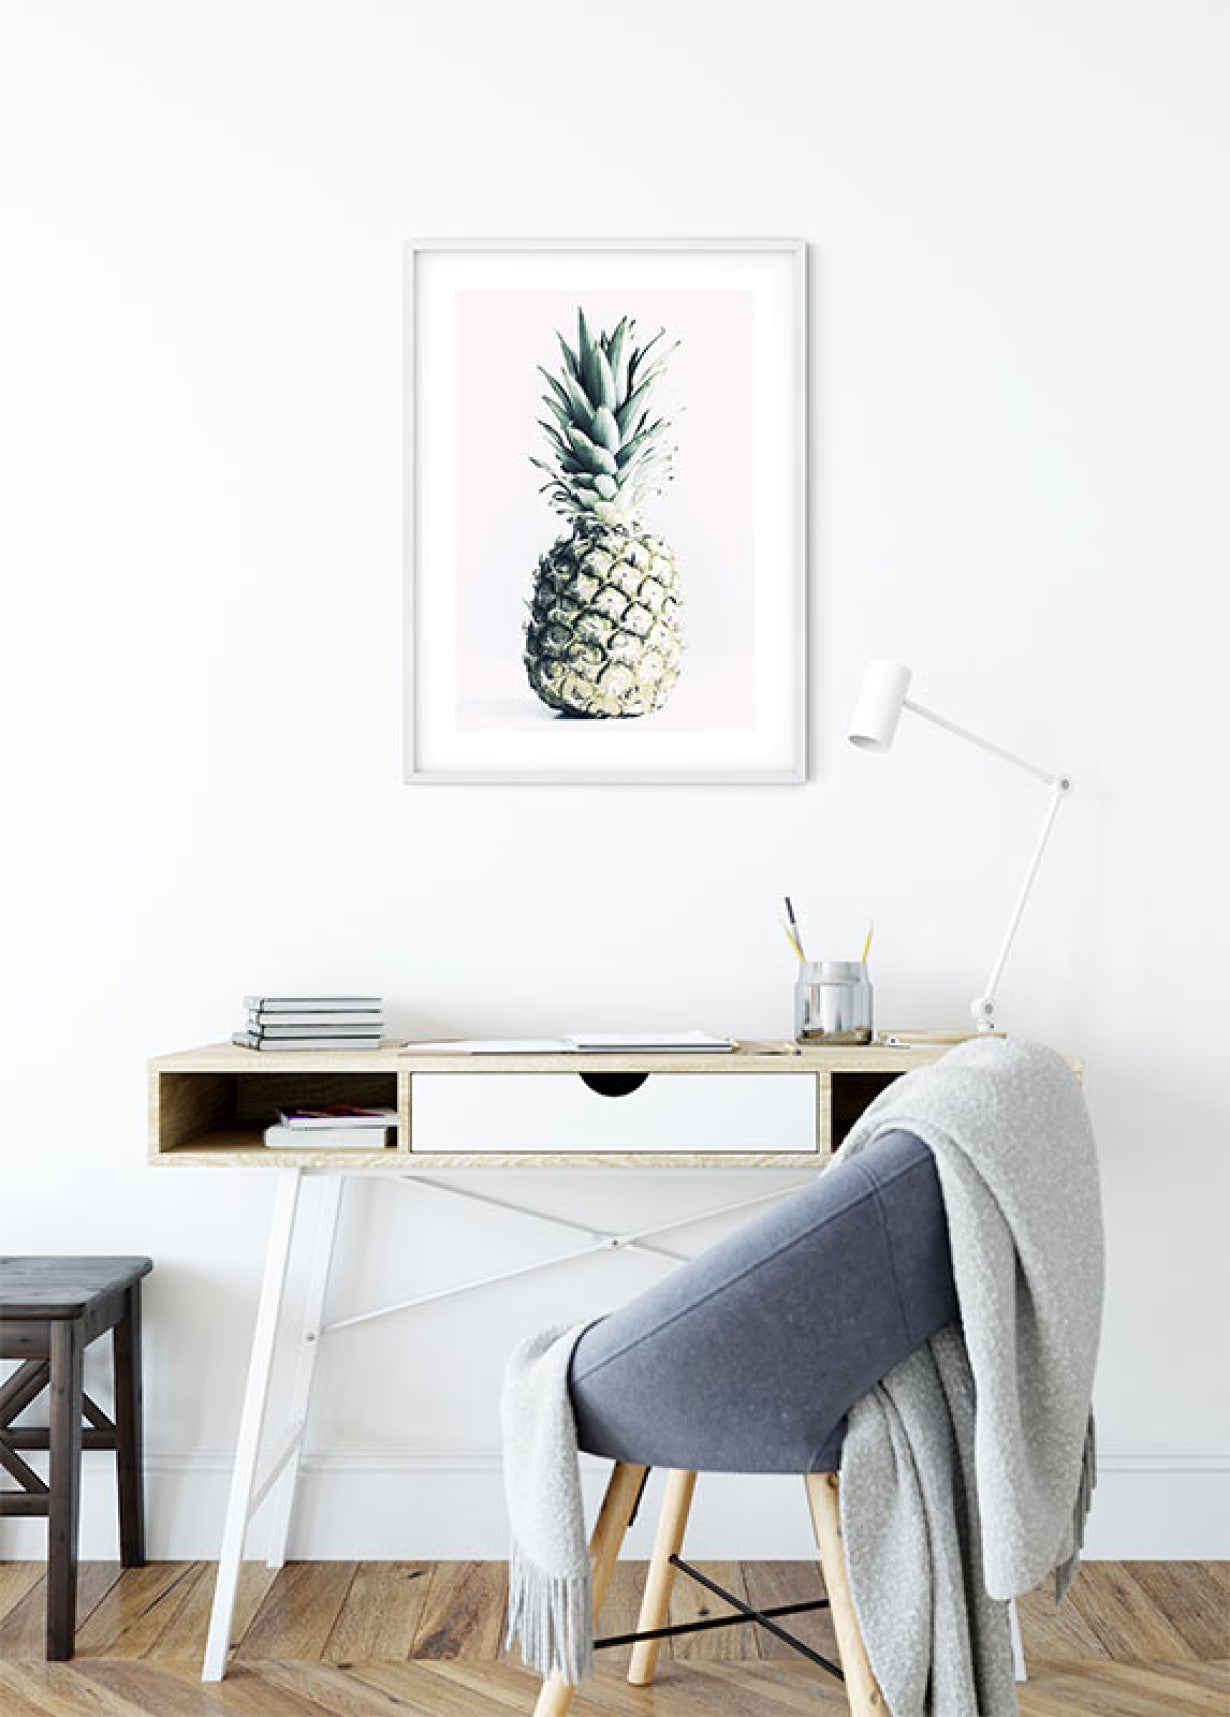 Pineapple Art Poster